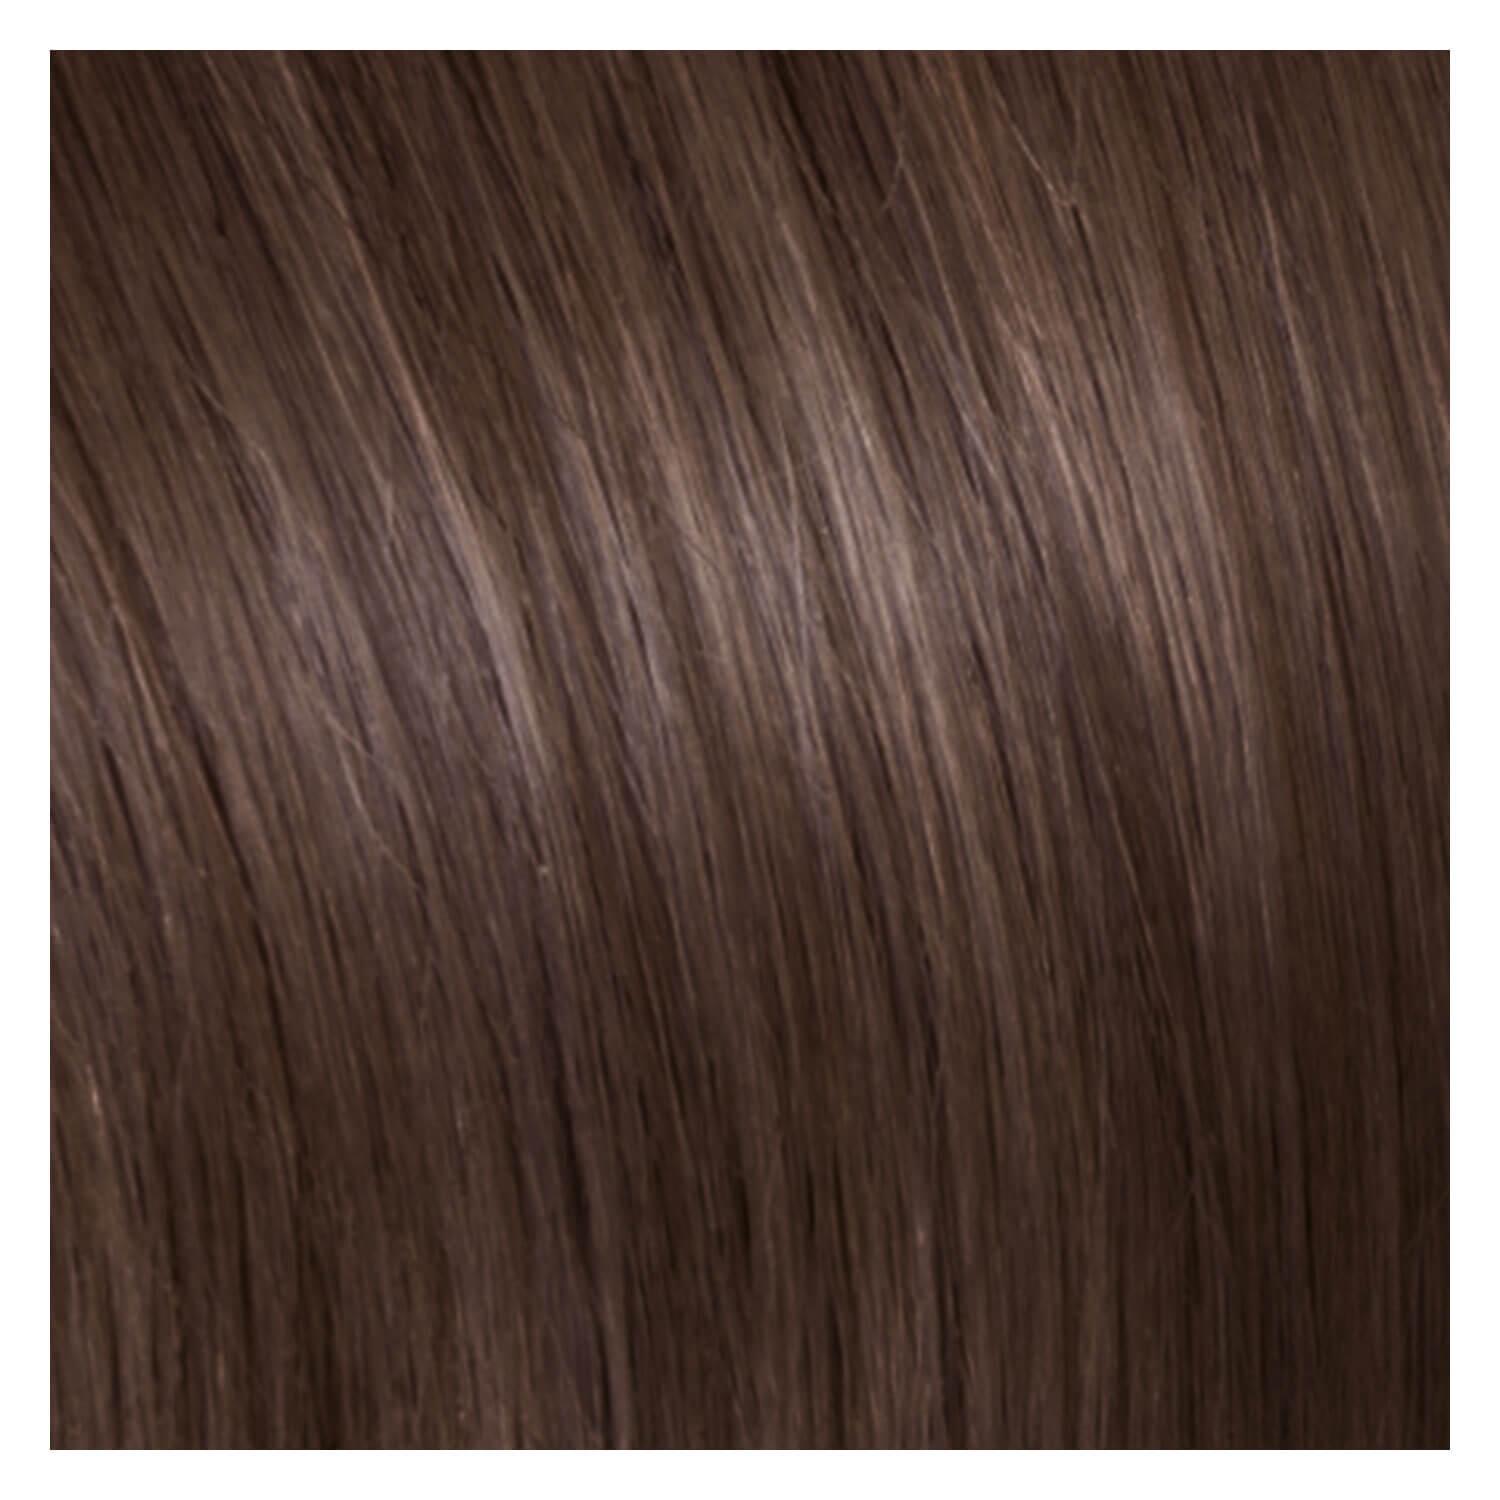 SHE Bonding-System Hair Extensions Straight - 10 Ash Light Blond 55/60cm